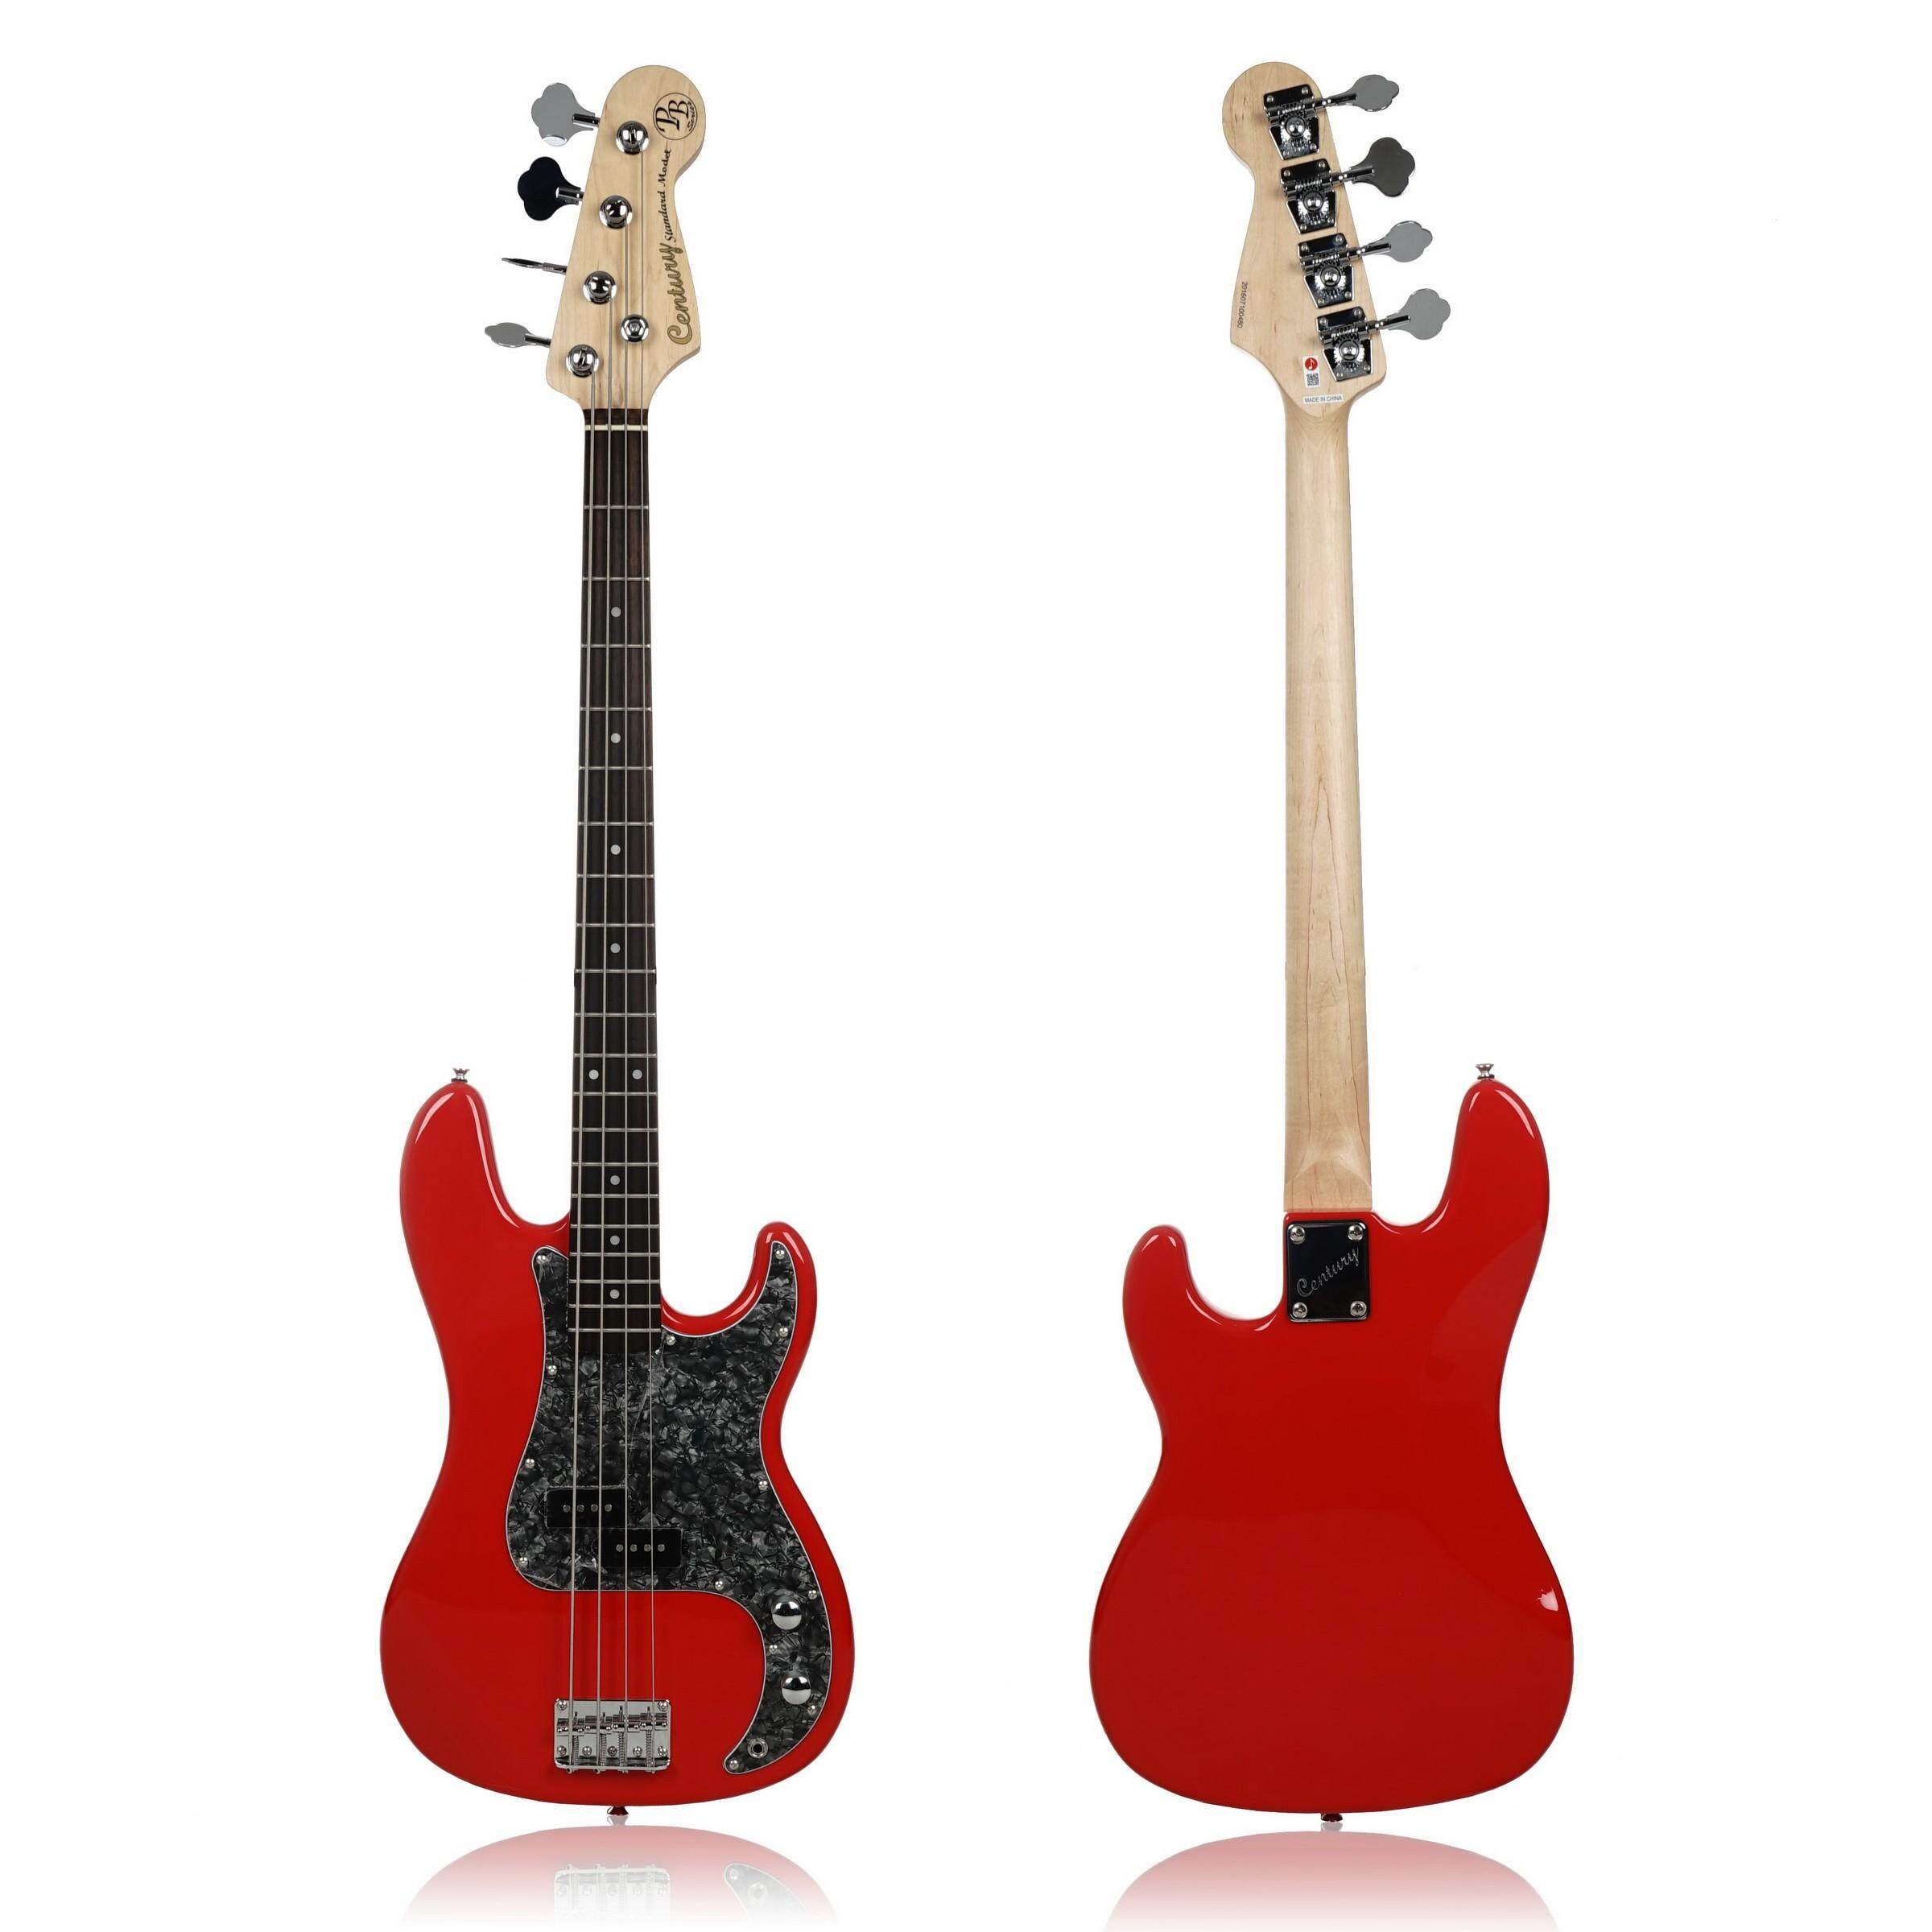 Century Guitar Bass กีต้าร์เบสไฟฟ้า 4สาย รุ่น CB-22 สีแดง แถมกระเป๋า+สายแจ็ค